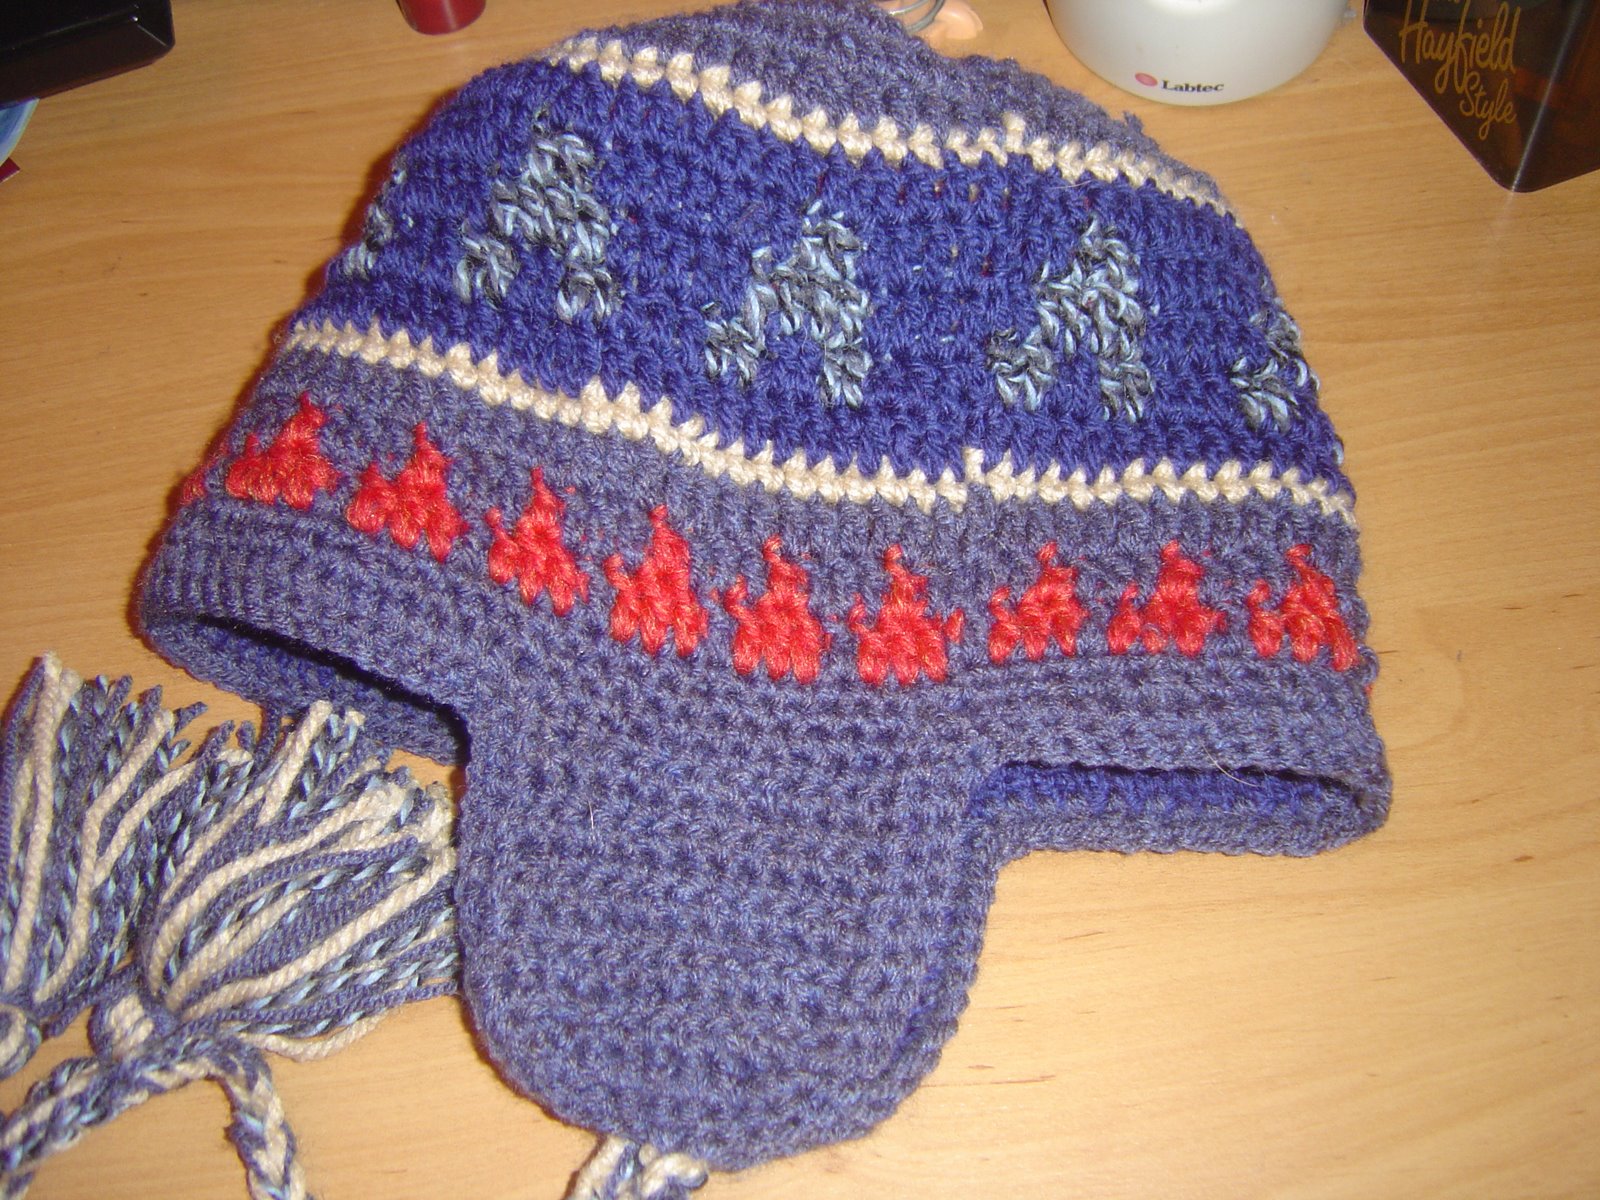 [My+reversible+hat+showing+crochet+side.JPG]